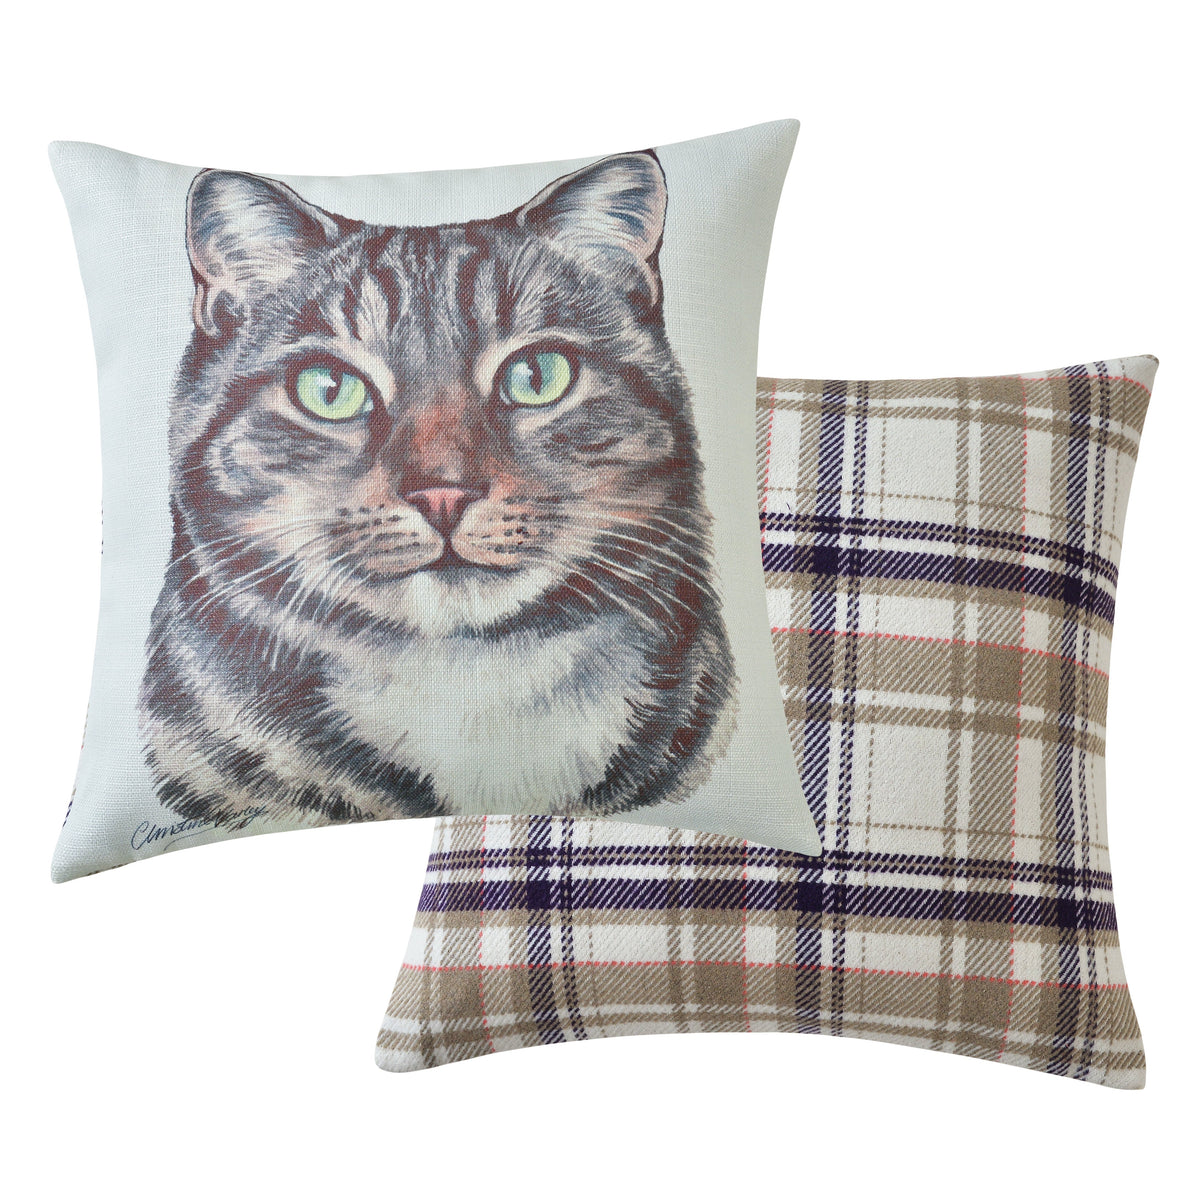 Tabby Cat Cushion